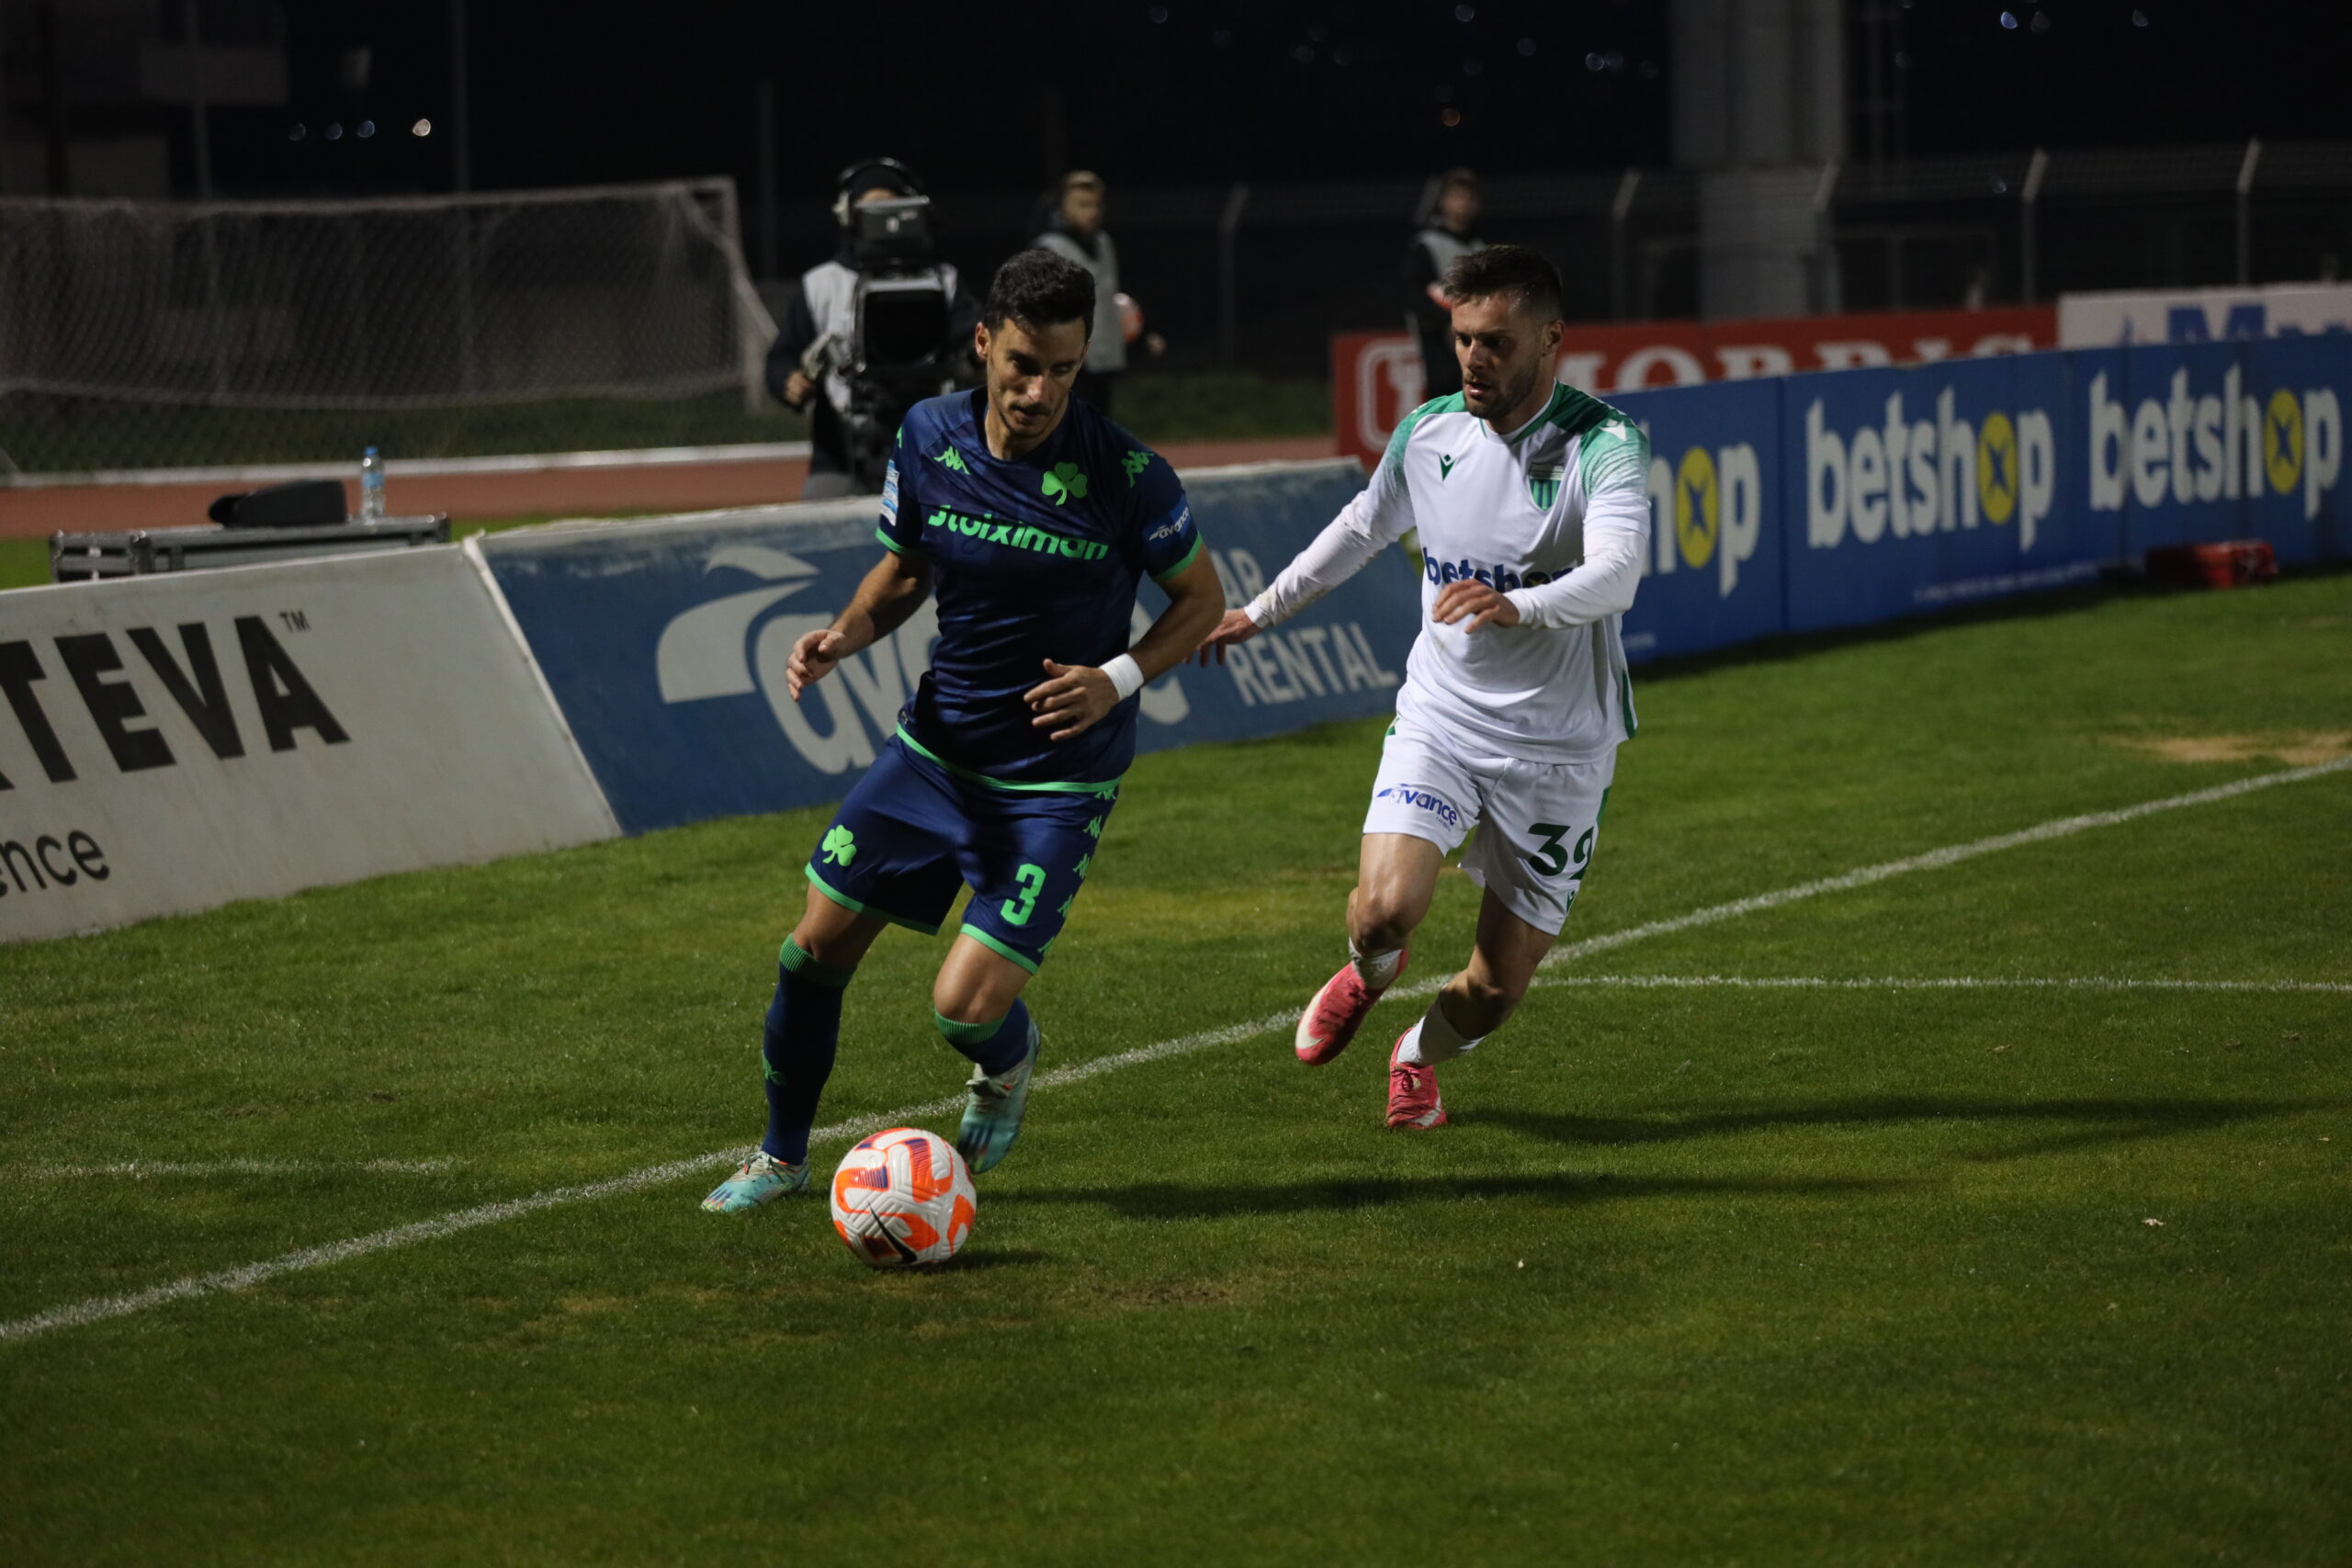 Λεβαδειακός - Παναθηναϊκός 0-1: Επιστροφή στις νίκες για τους πράσινους, με το αριστερό του Βέρμπιτς